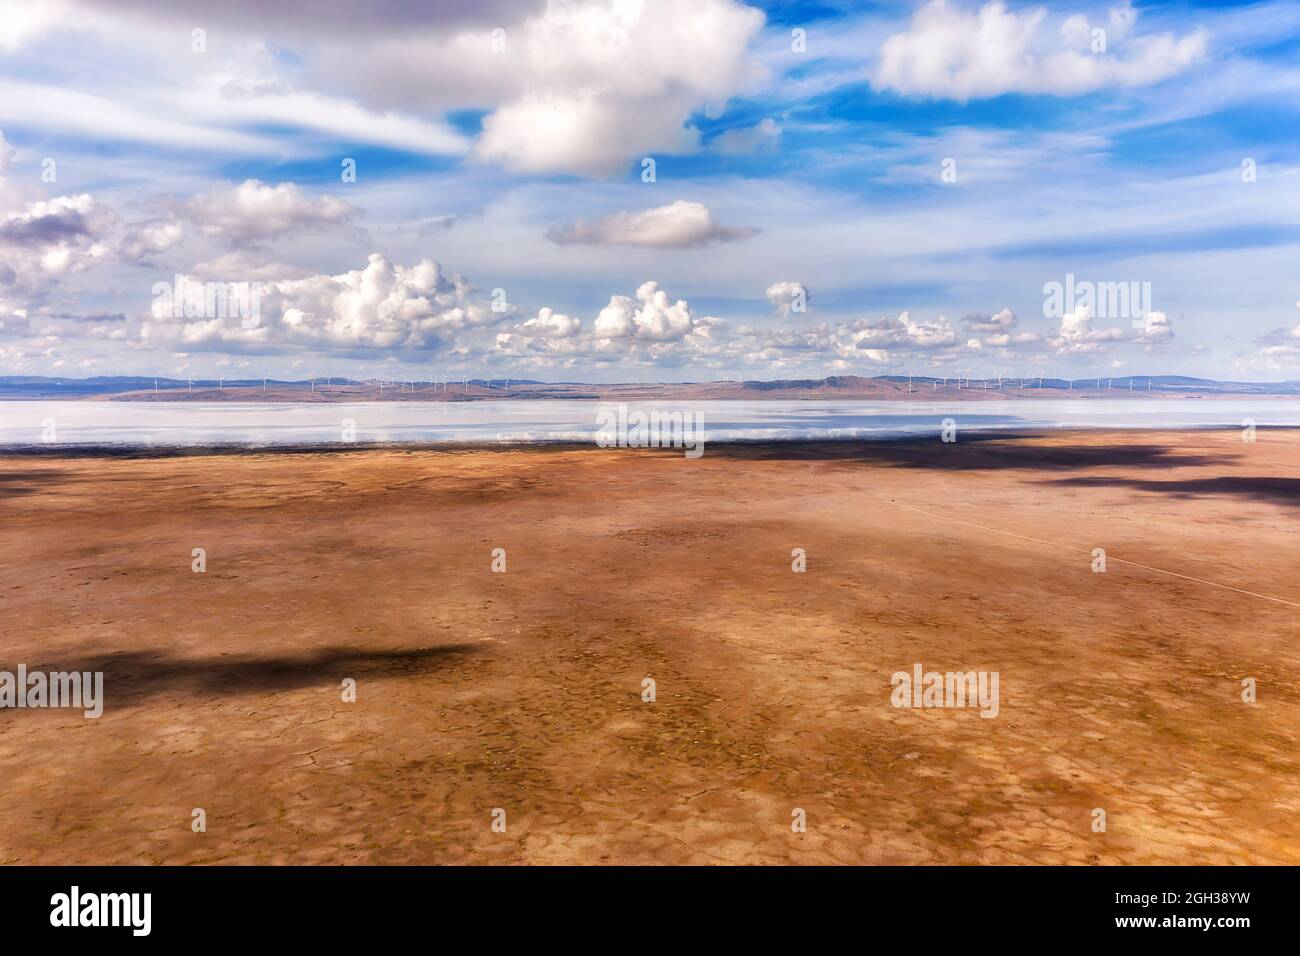 Die Ebenen des Lake George in NSW von Australien mit weit entfernten Windfarm-Windmühlen, die erneuerbare Energie erzeugen - landschaftlich reizvoller Blick. Stockfoto